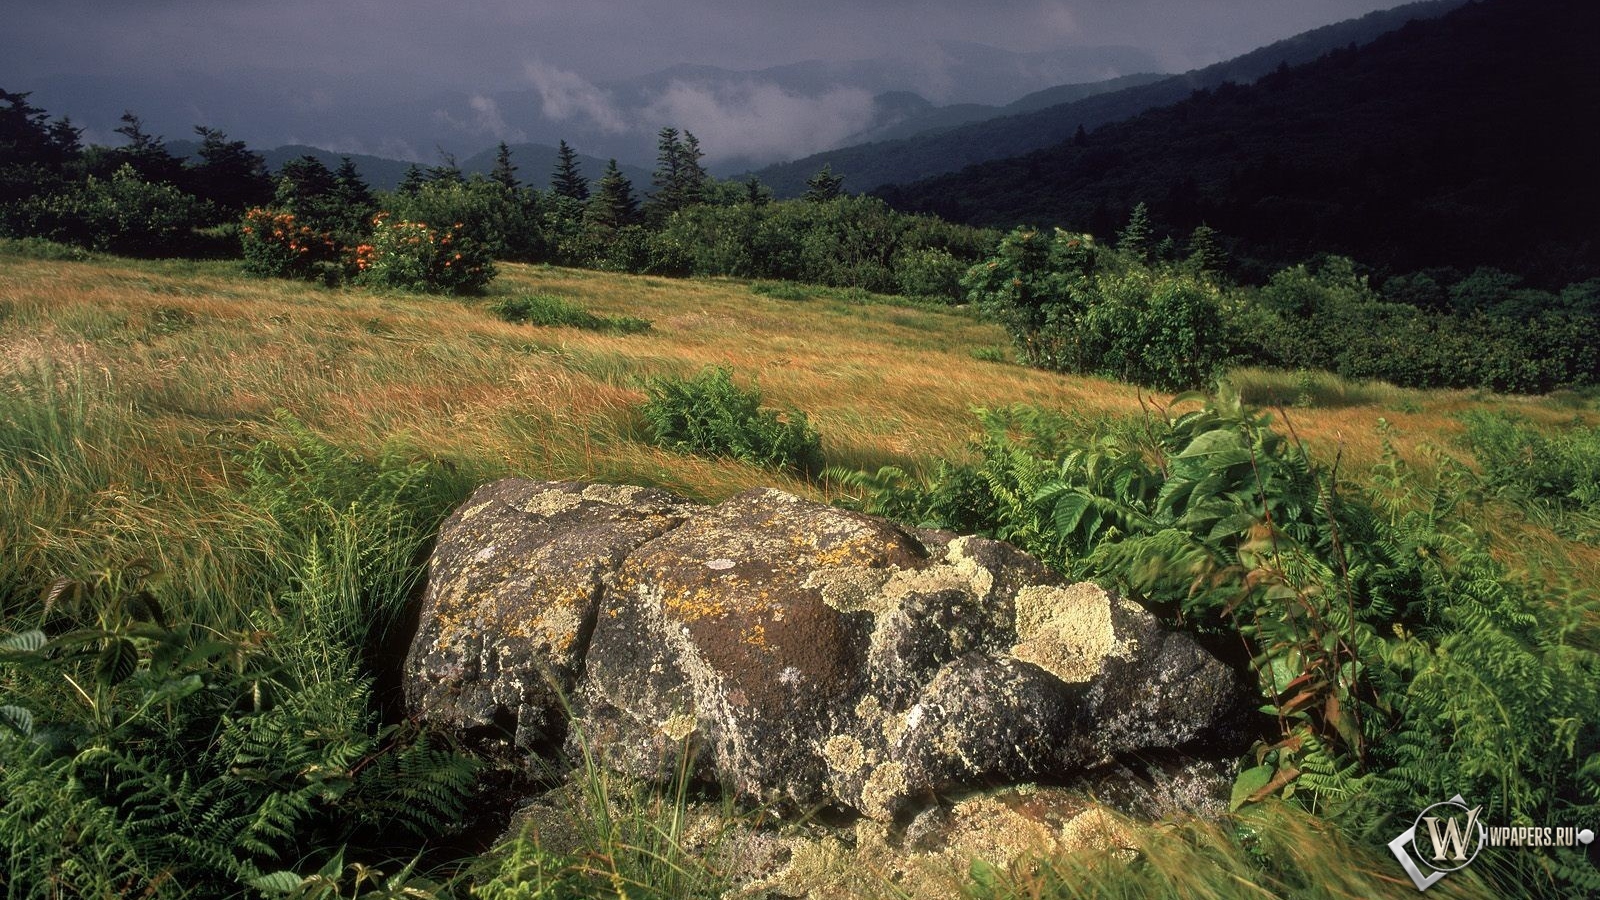 Камни в траве 1600x900